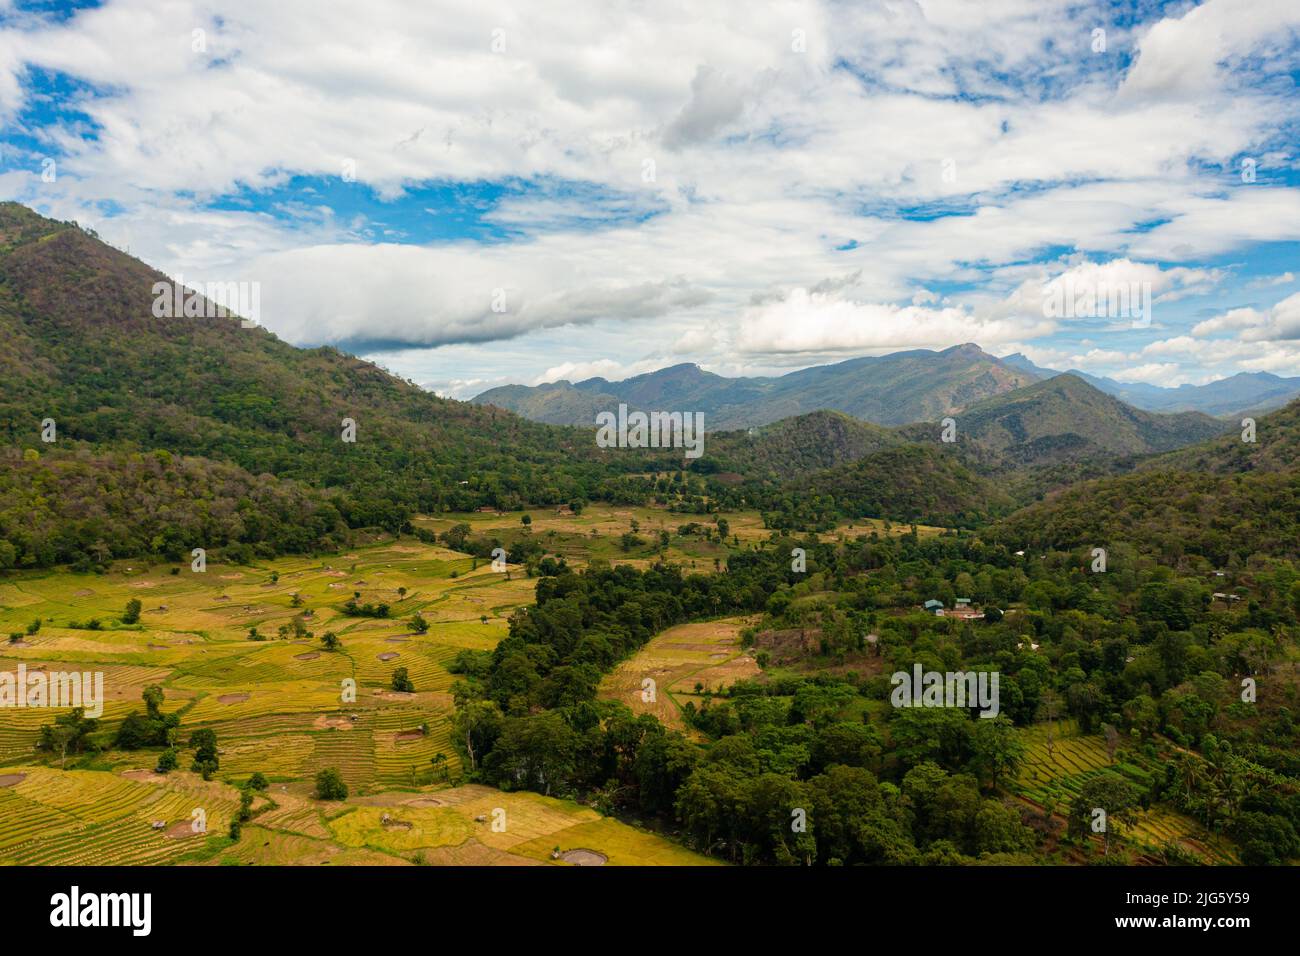 Campi di riso e terrazze in una valle tra le montagne. Paesaggio agricolo in Sri Lanka. Foto Stock